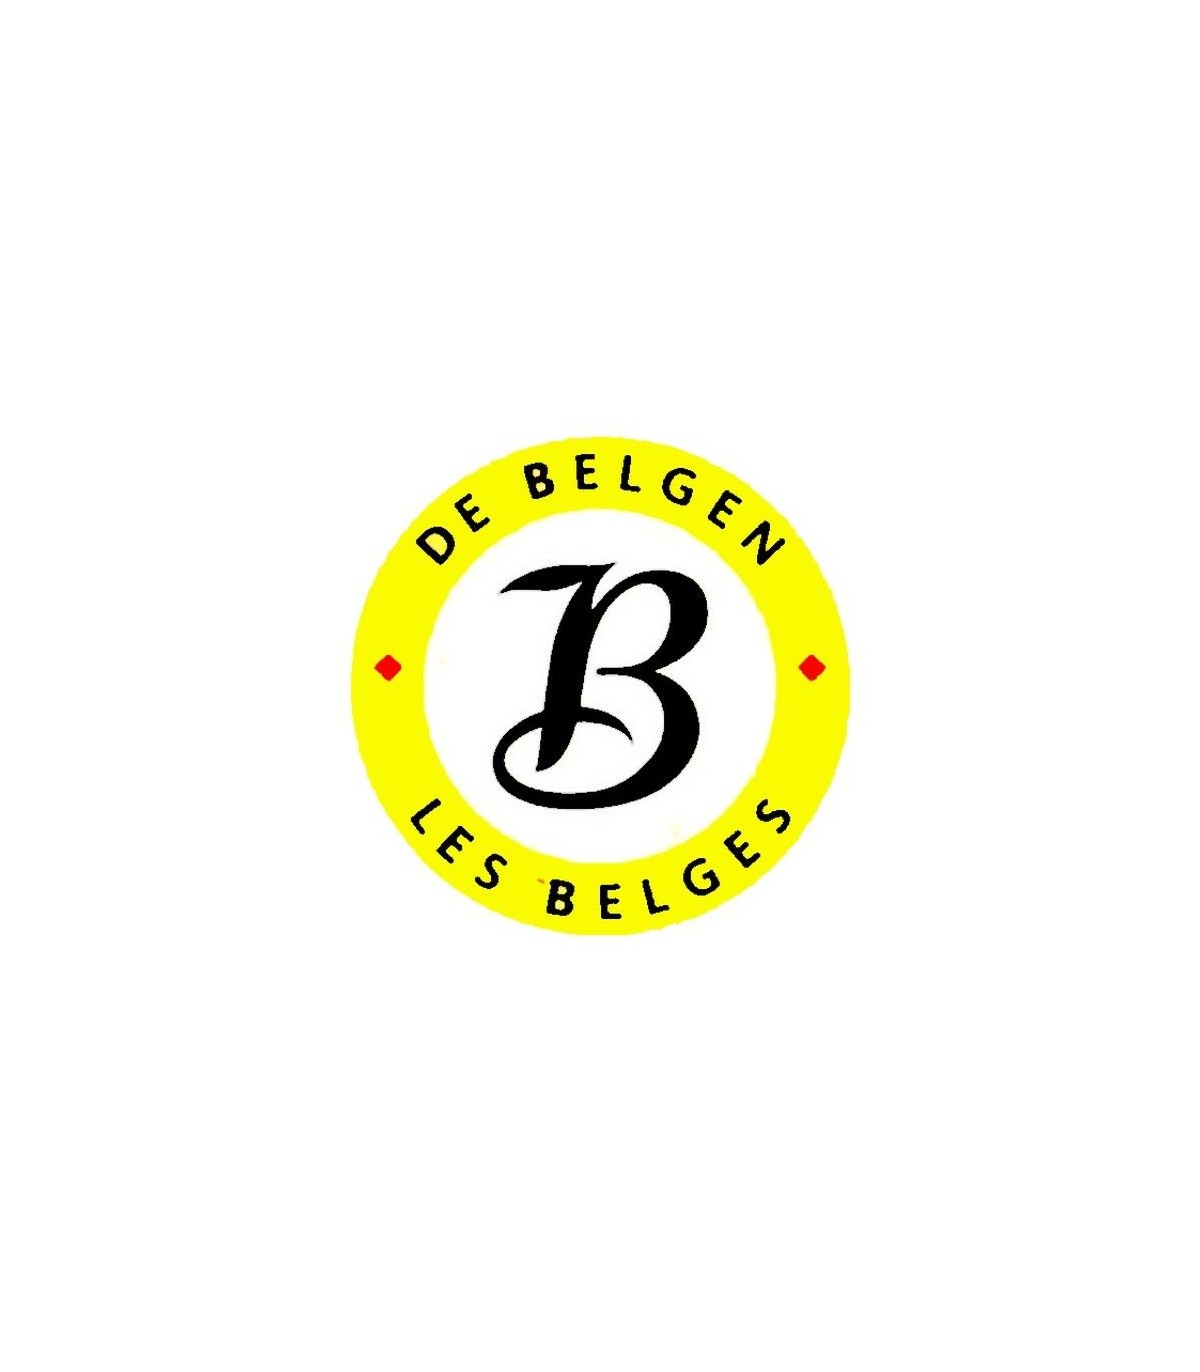 Buy Online Sirop de Liège 100 % fruits 450g - Belgian Shop - Delive